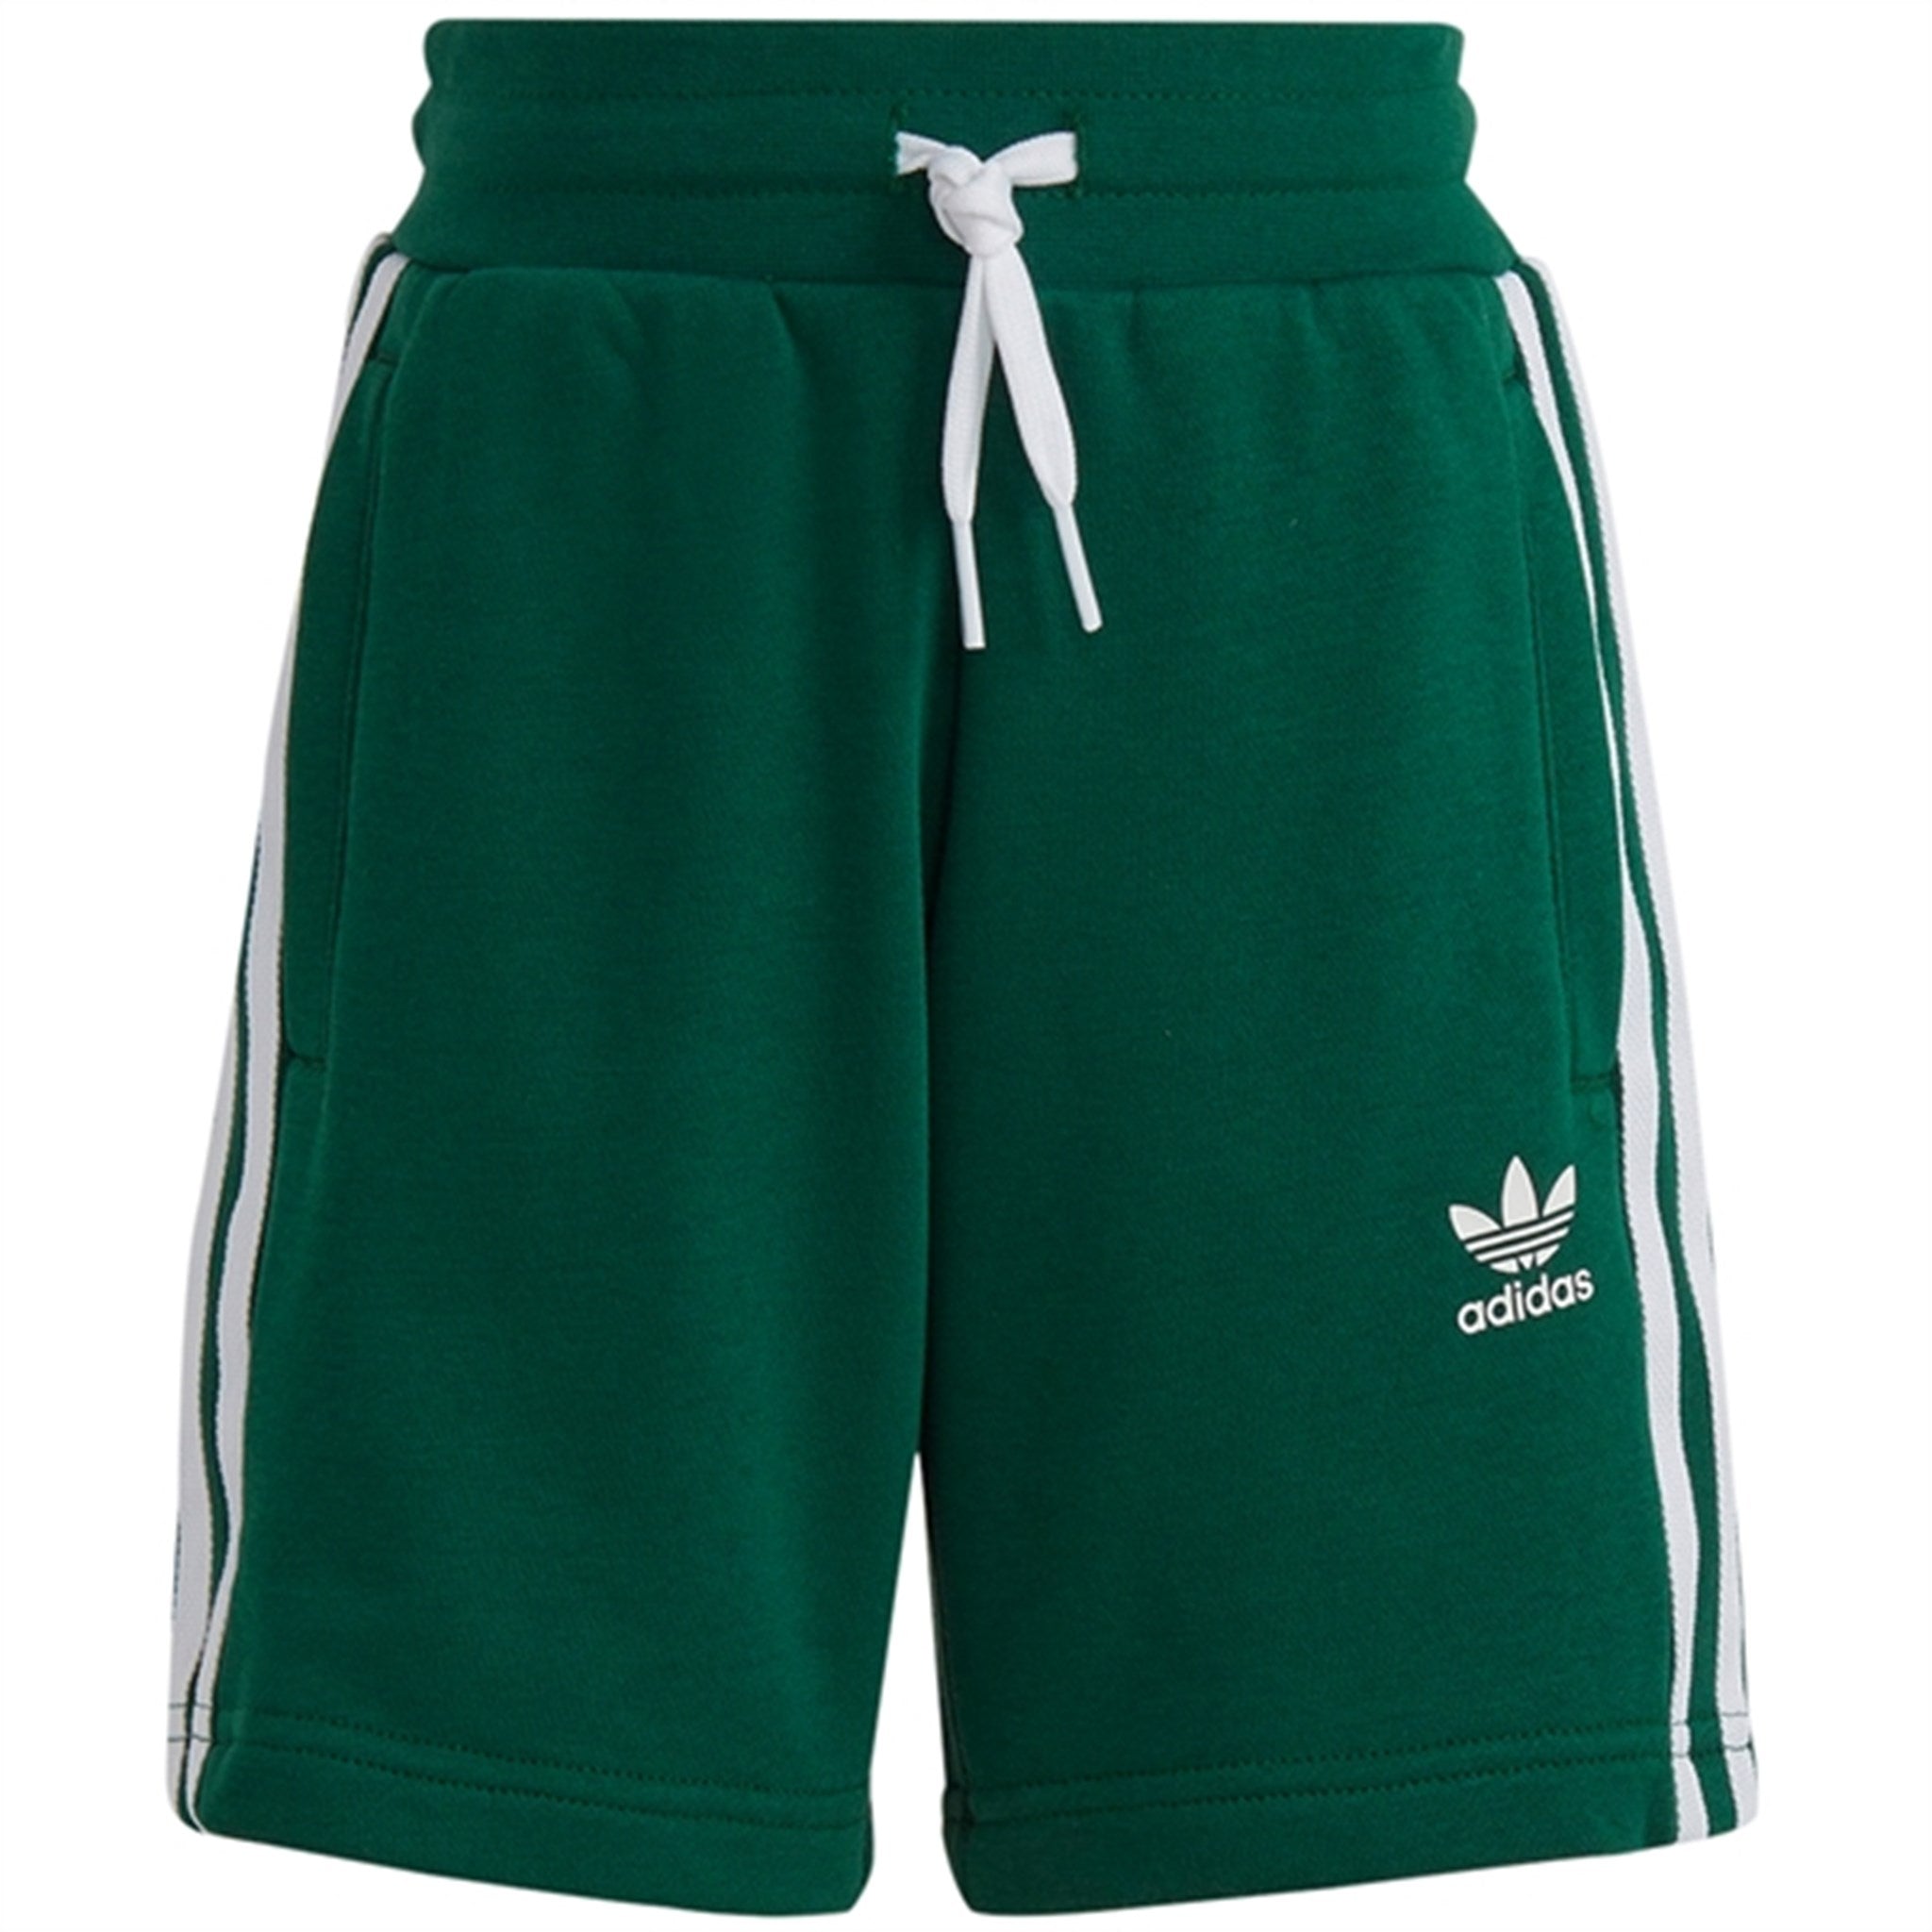 adidas Originals Dark Green Shorts Tee Sett 8